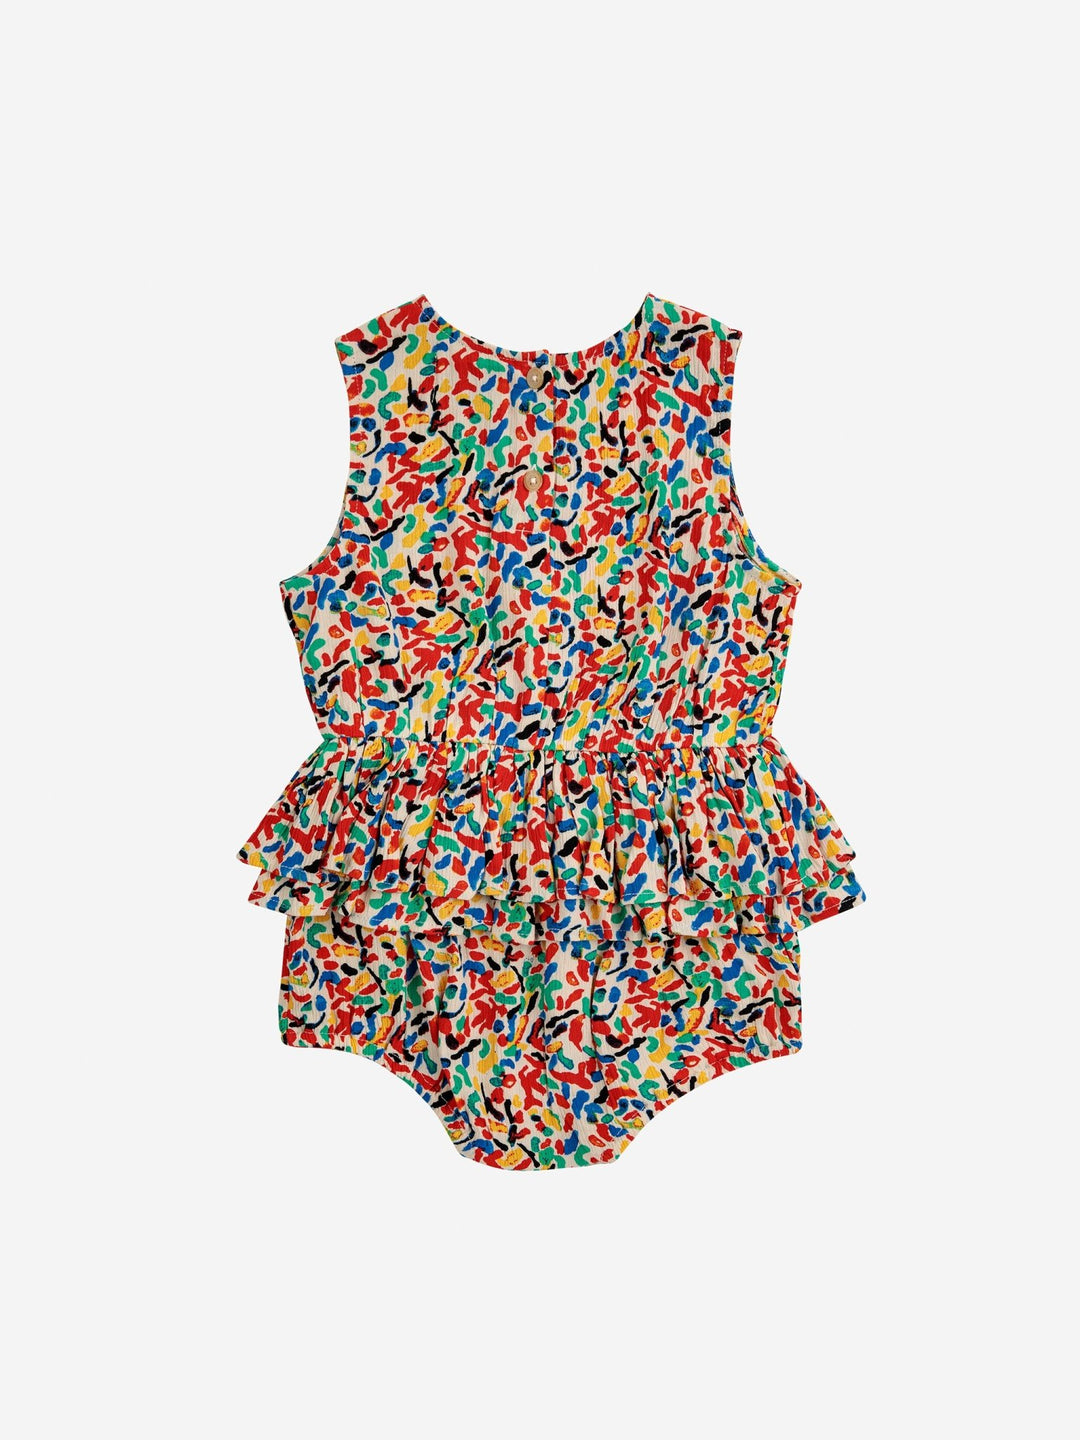 Confetti All Over Ruffle Woven Romper - Multicolor - Posh New York